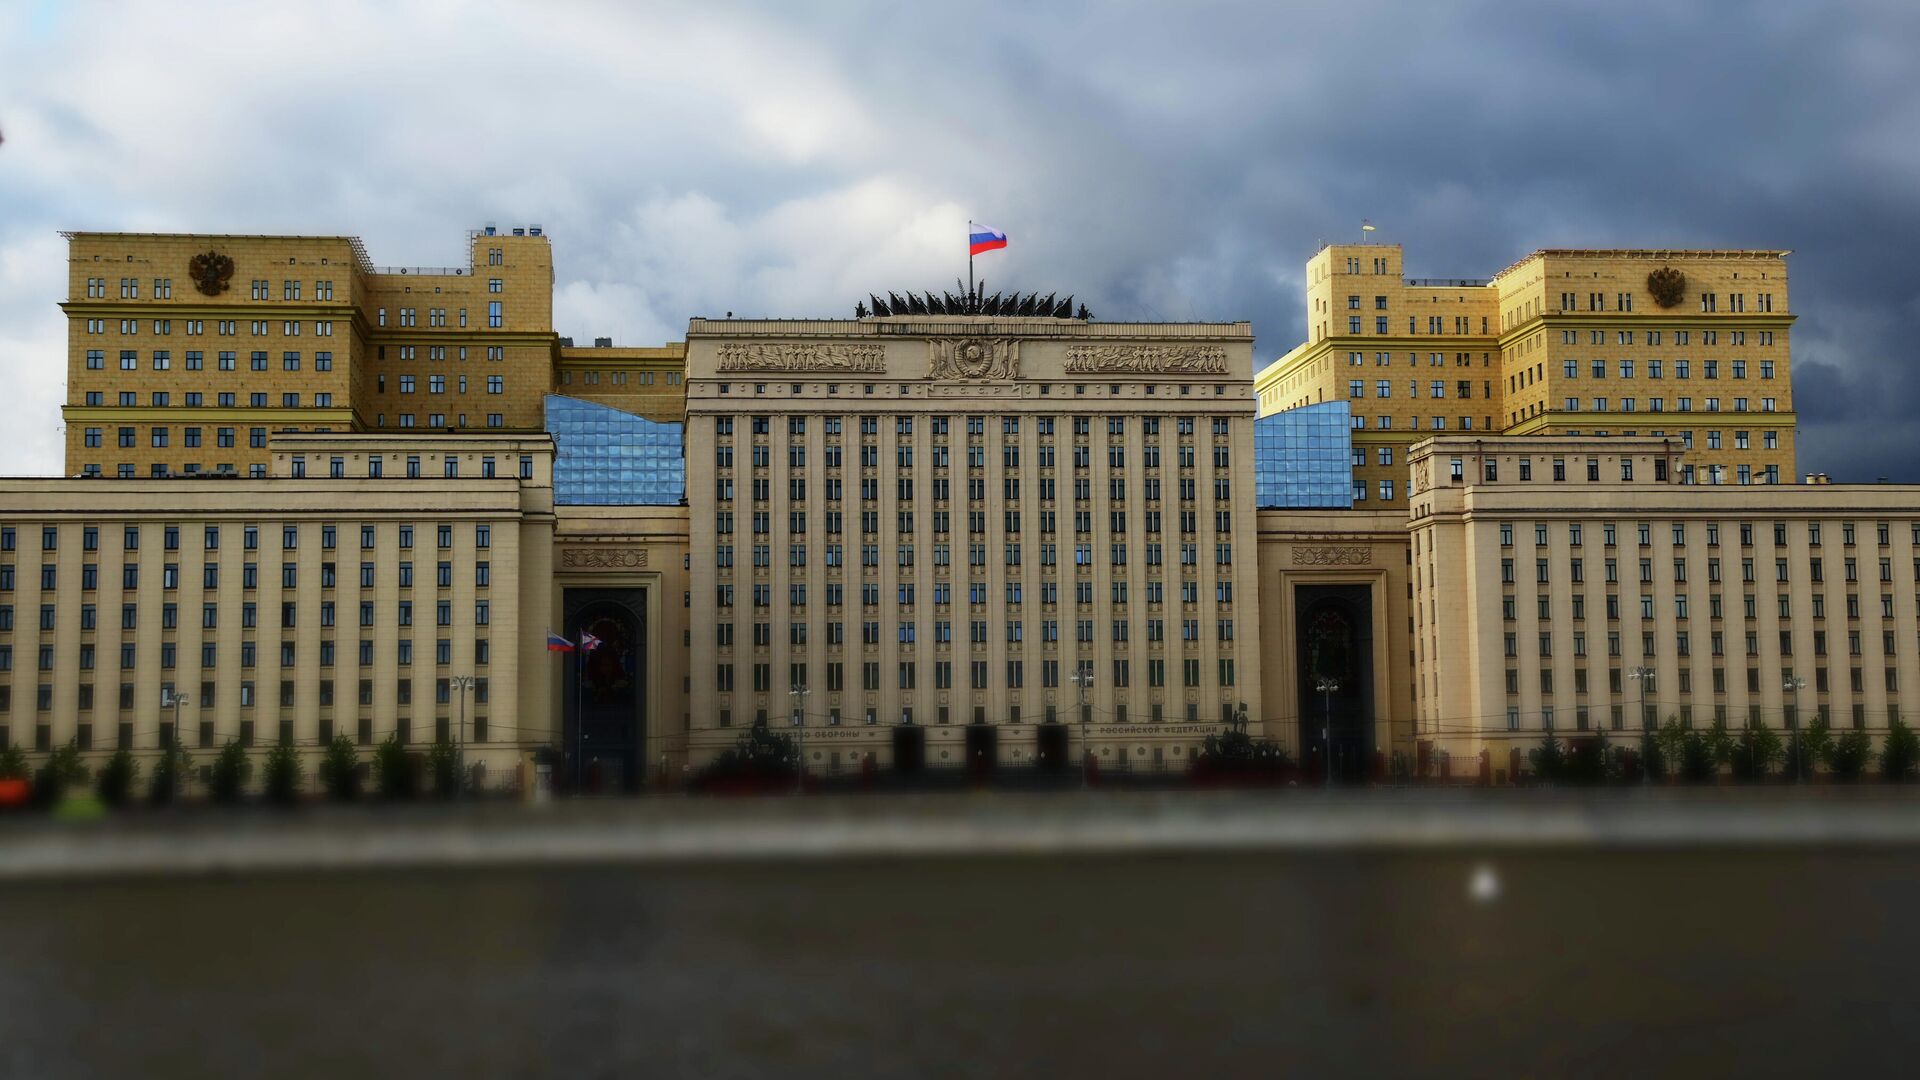 ՌԴ Պաշտպանության նախարարության շենքը Մոսկվայում - Sputnik Արմենիա, 1920, 21.06.2022